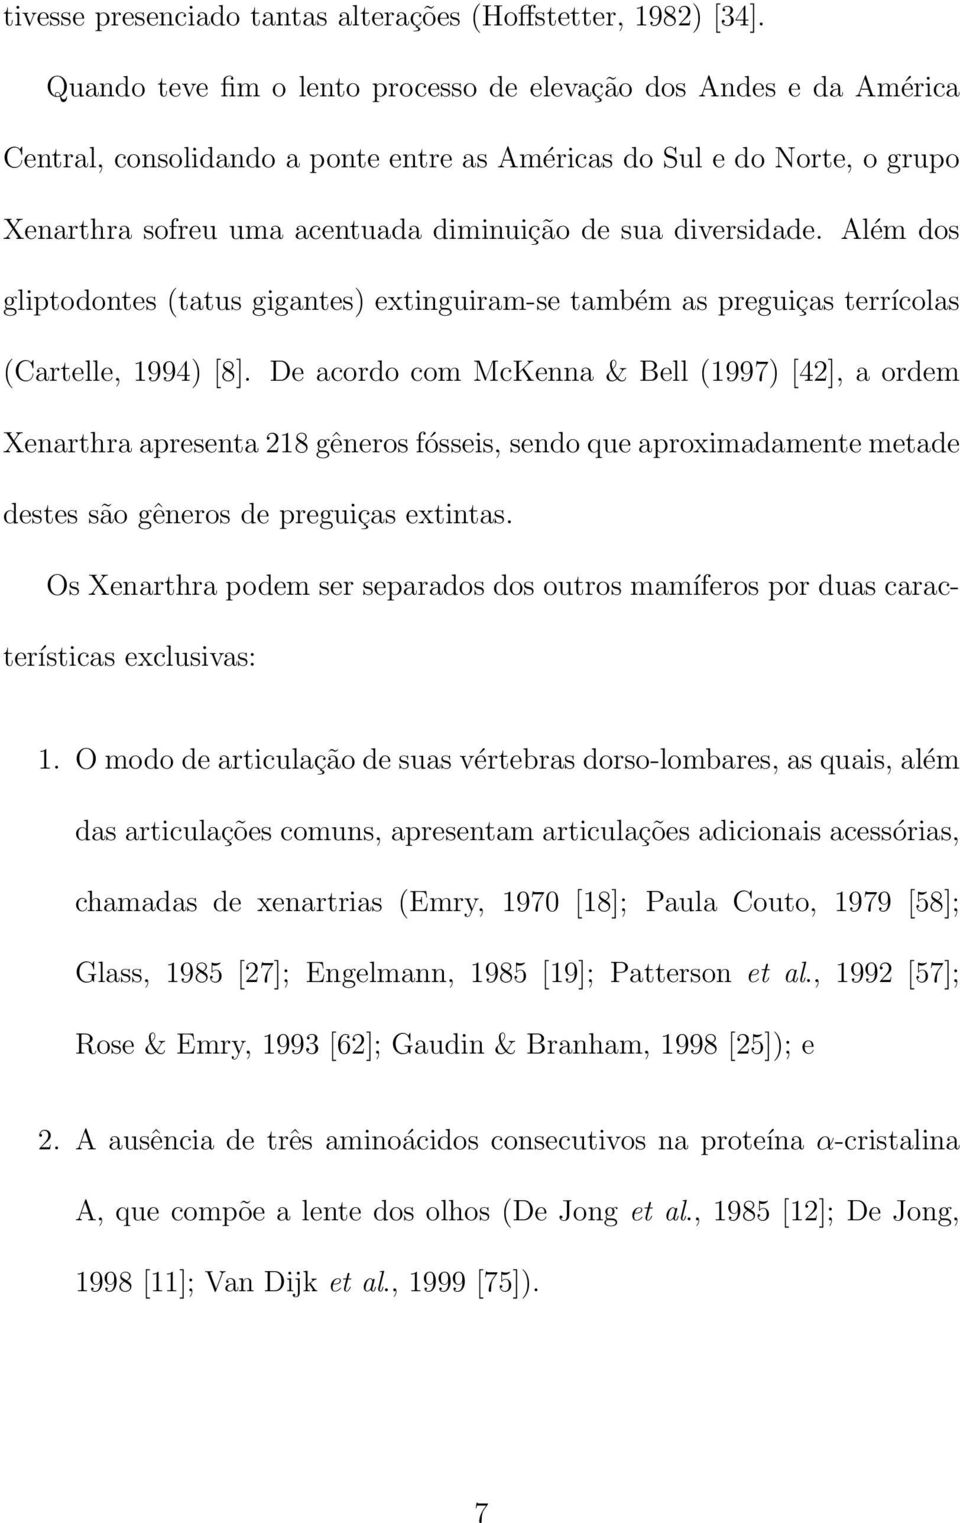 diversidade. Além dos gliptodontes (tatus gigantes) extinguiram-se também as preguiças terrícolas (Cartelle, 1994) [8].